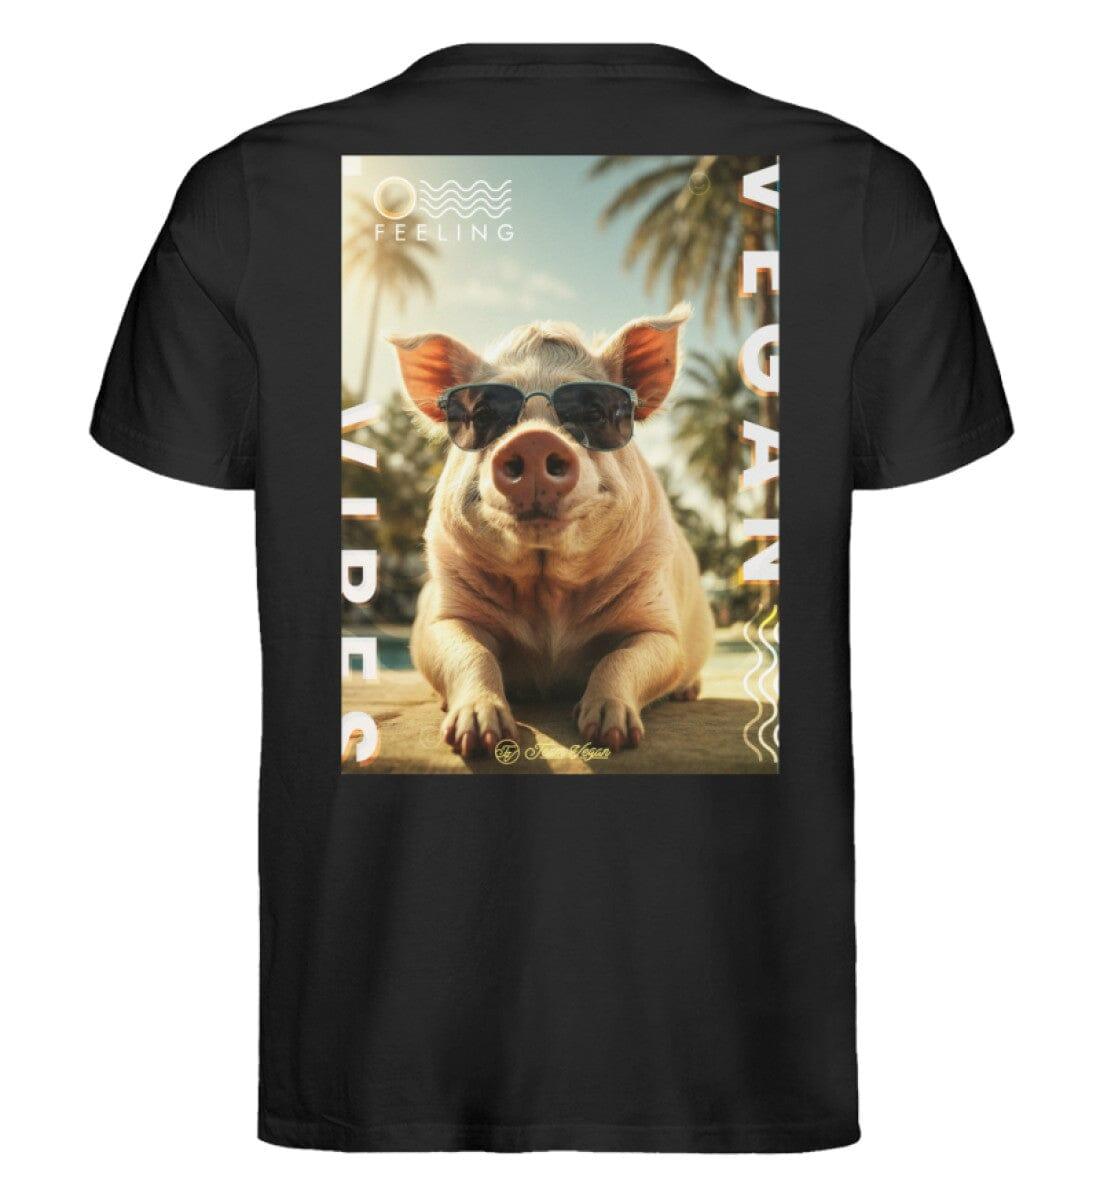 Vegan Vibes - Pig (beidseitig) - Unisex Organic Shirt - Team Vegan © vegan t shirt